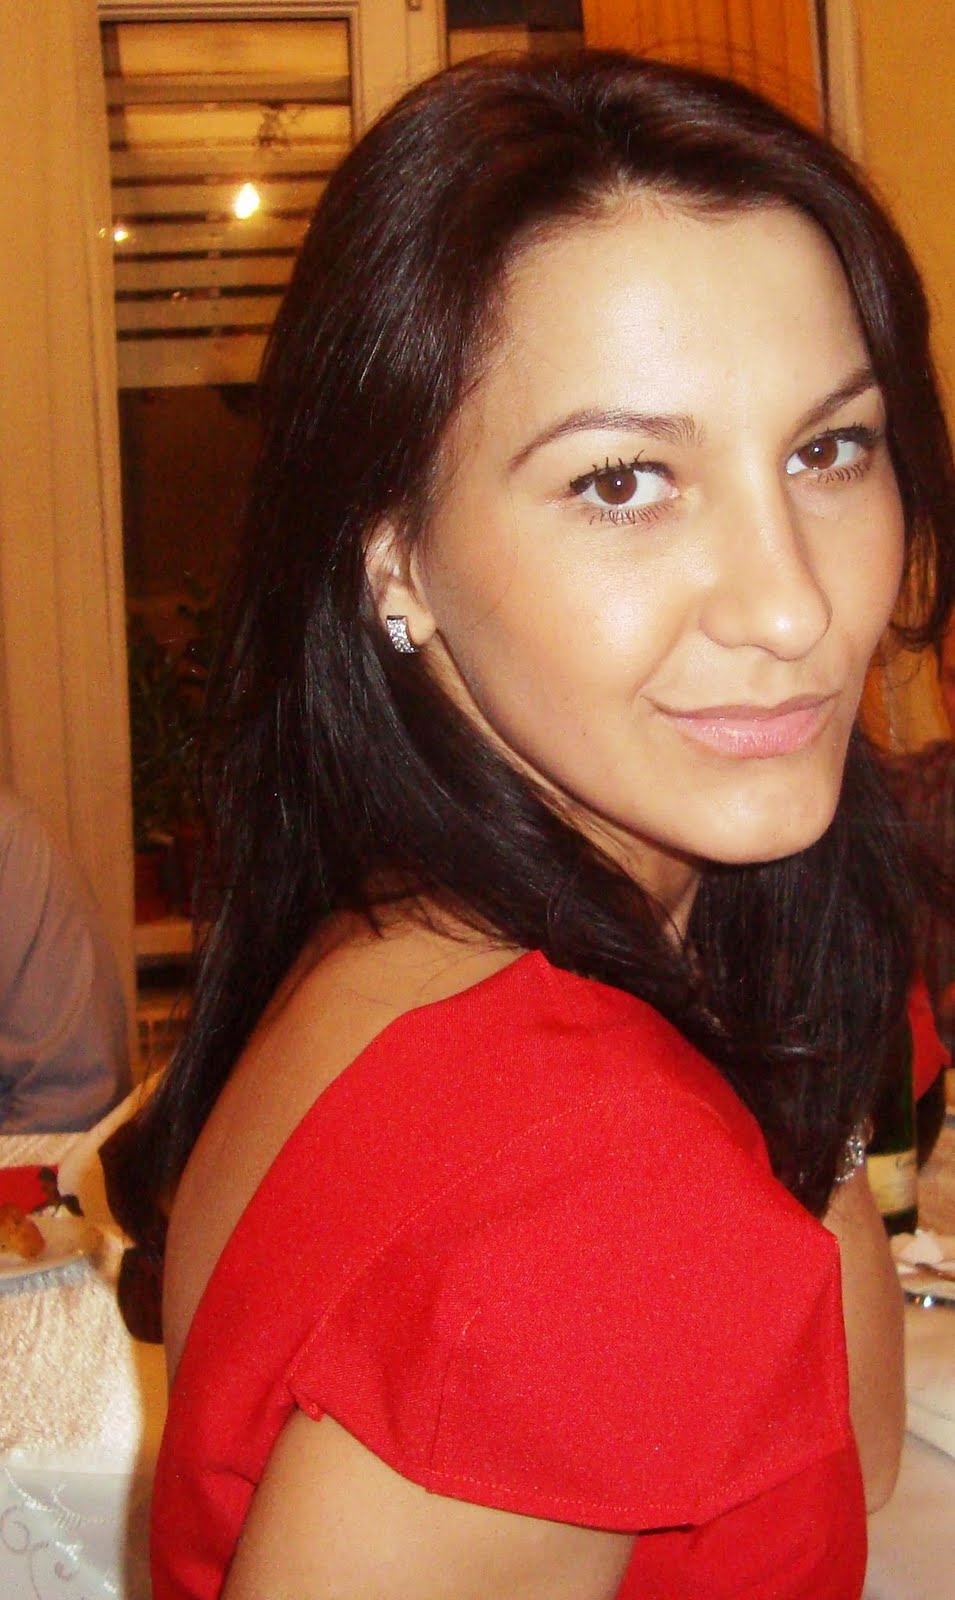 Laura Chirita: January 2012